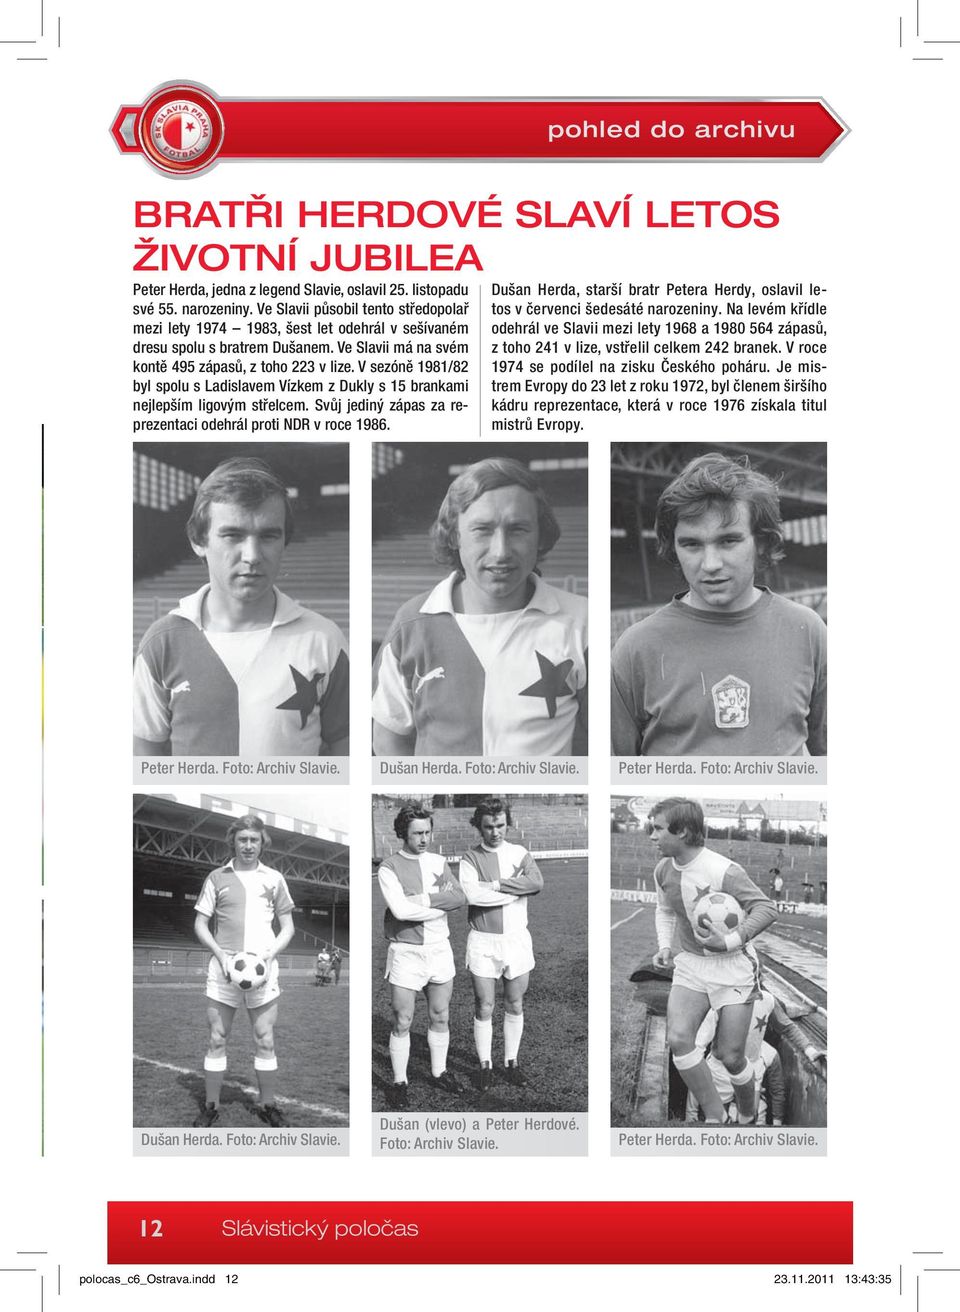 V sezóně 1981/82 byl spolu s Ladislavem Vízkem z Dukly s 15 brankami nejlepším ligovým střelcem. Svůj jediný zápas za reprezentaci odehrál proti NDR v roce 1986.